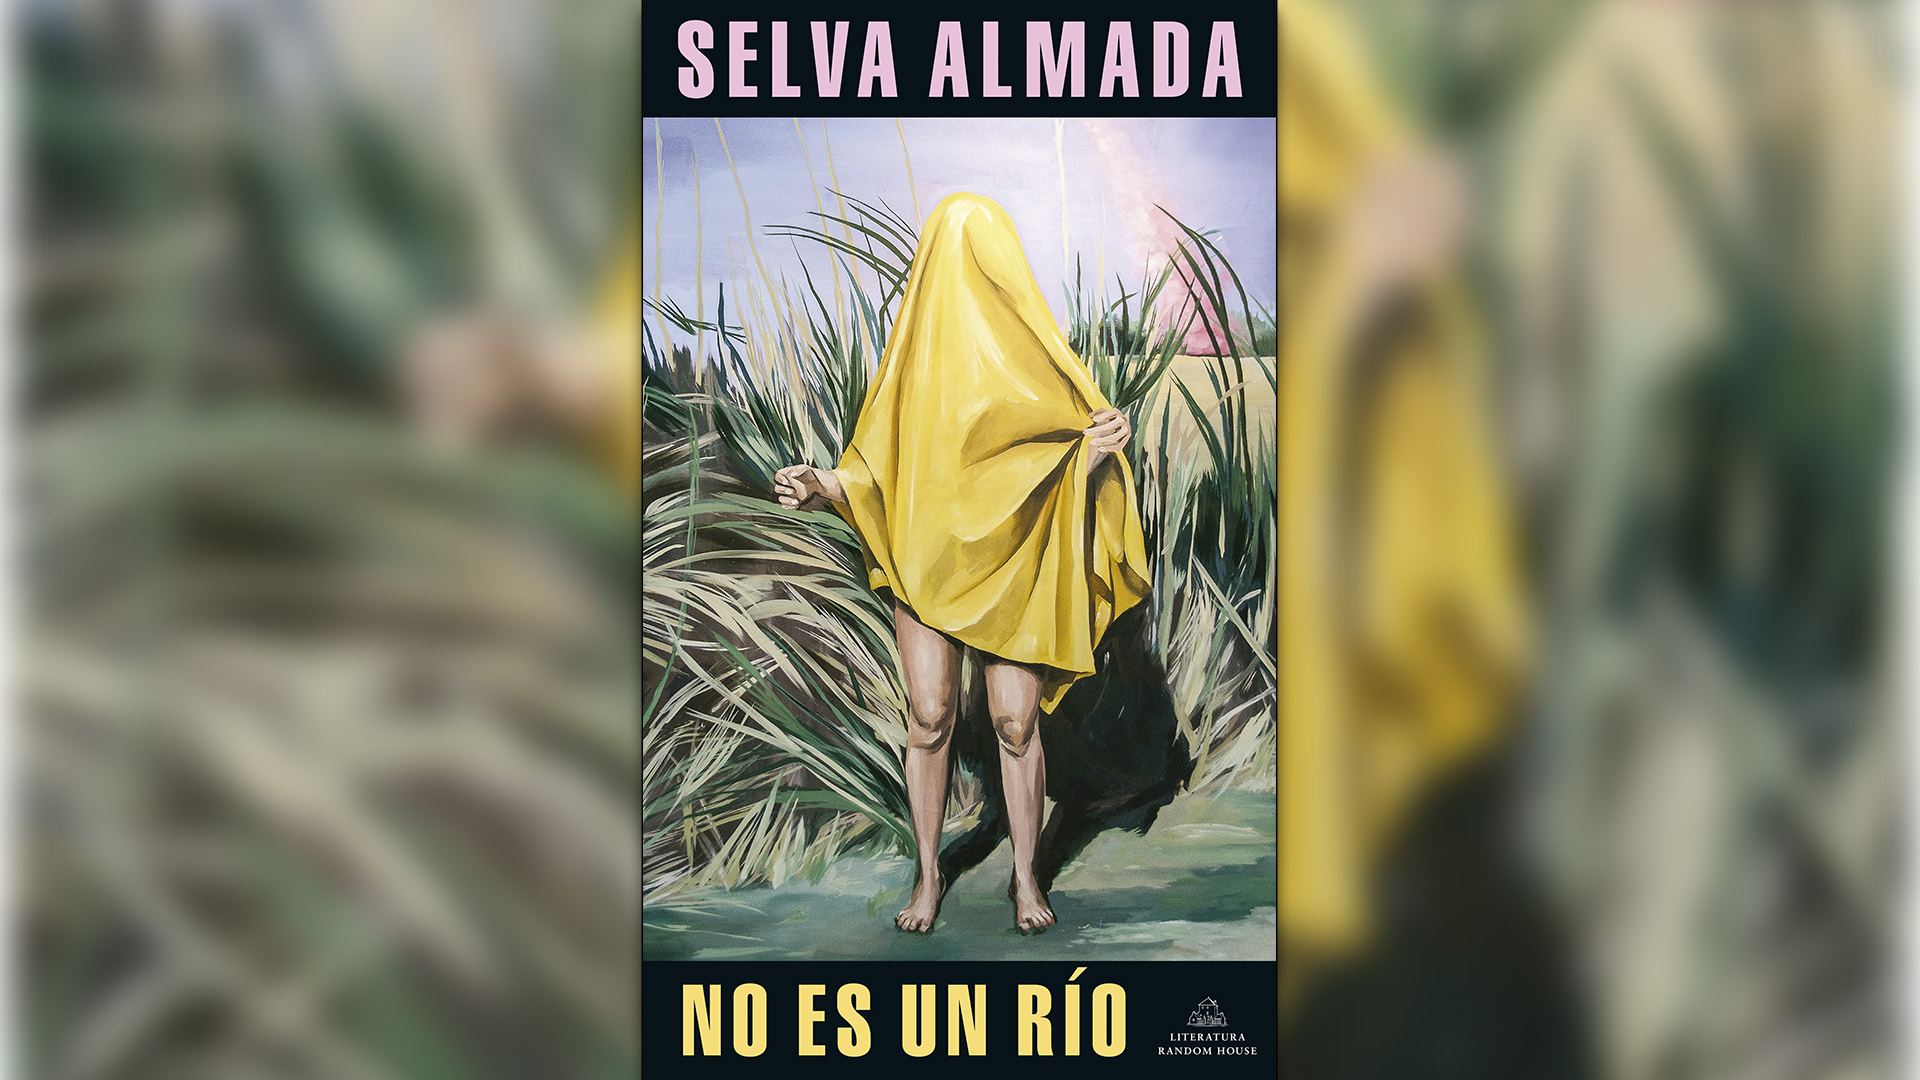 "No es un río", de Selva Almada